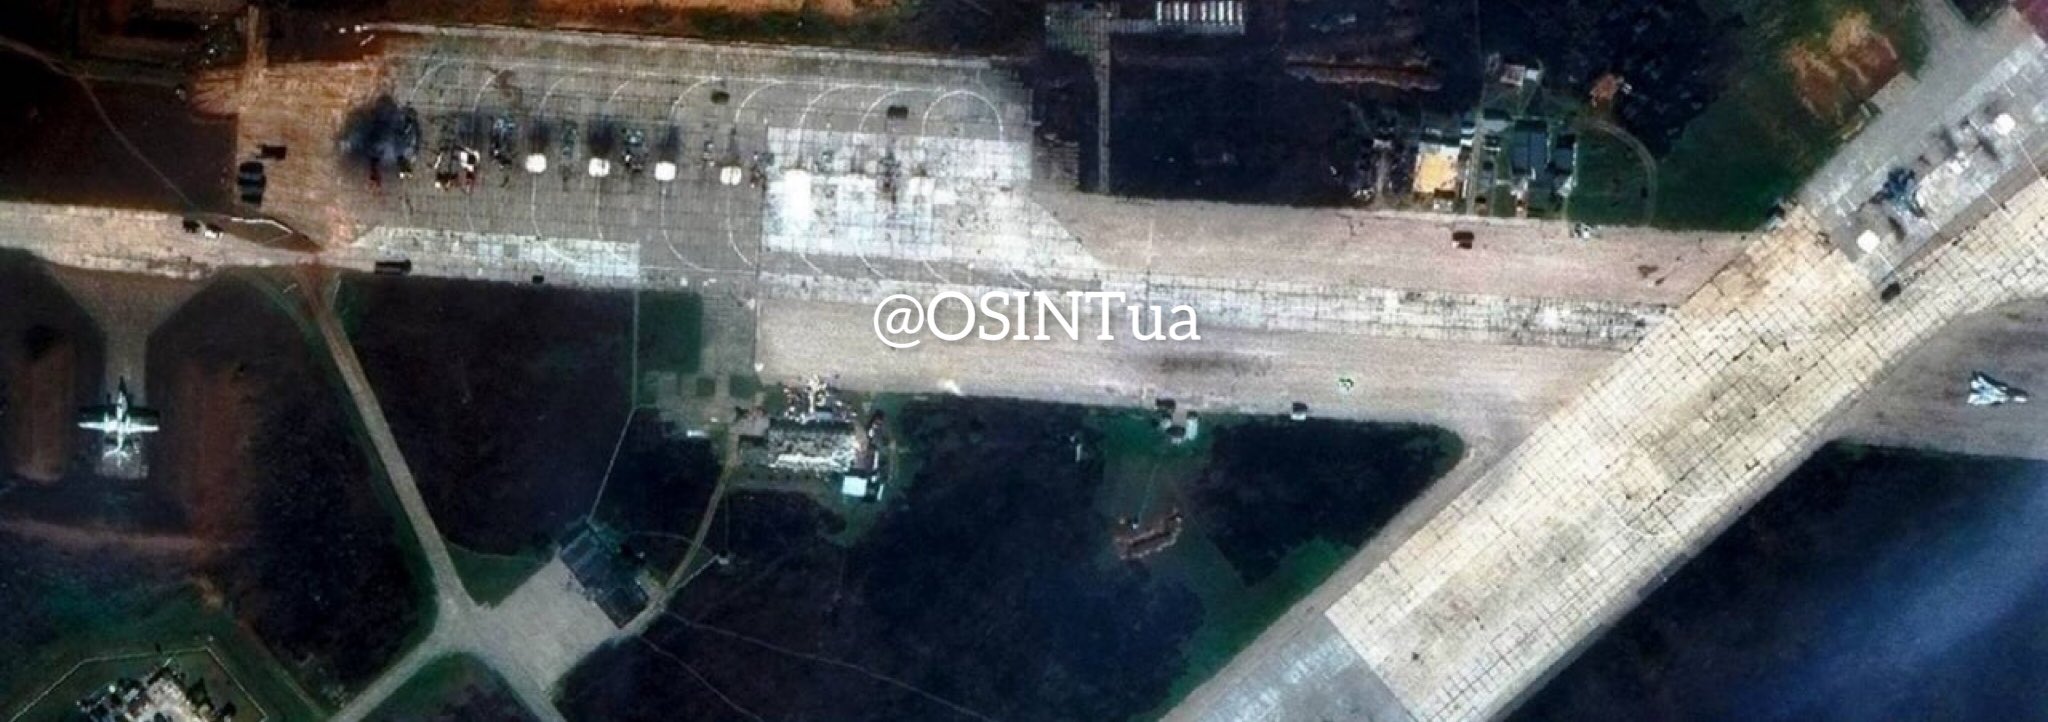 Взрывы на аэродроме в Крыму: в Сети опубликованы первые спутниковые снимки - 9 - изображение